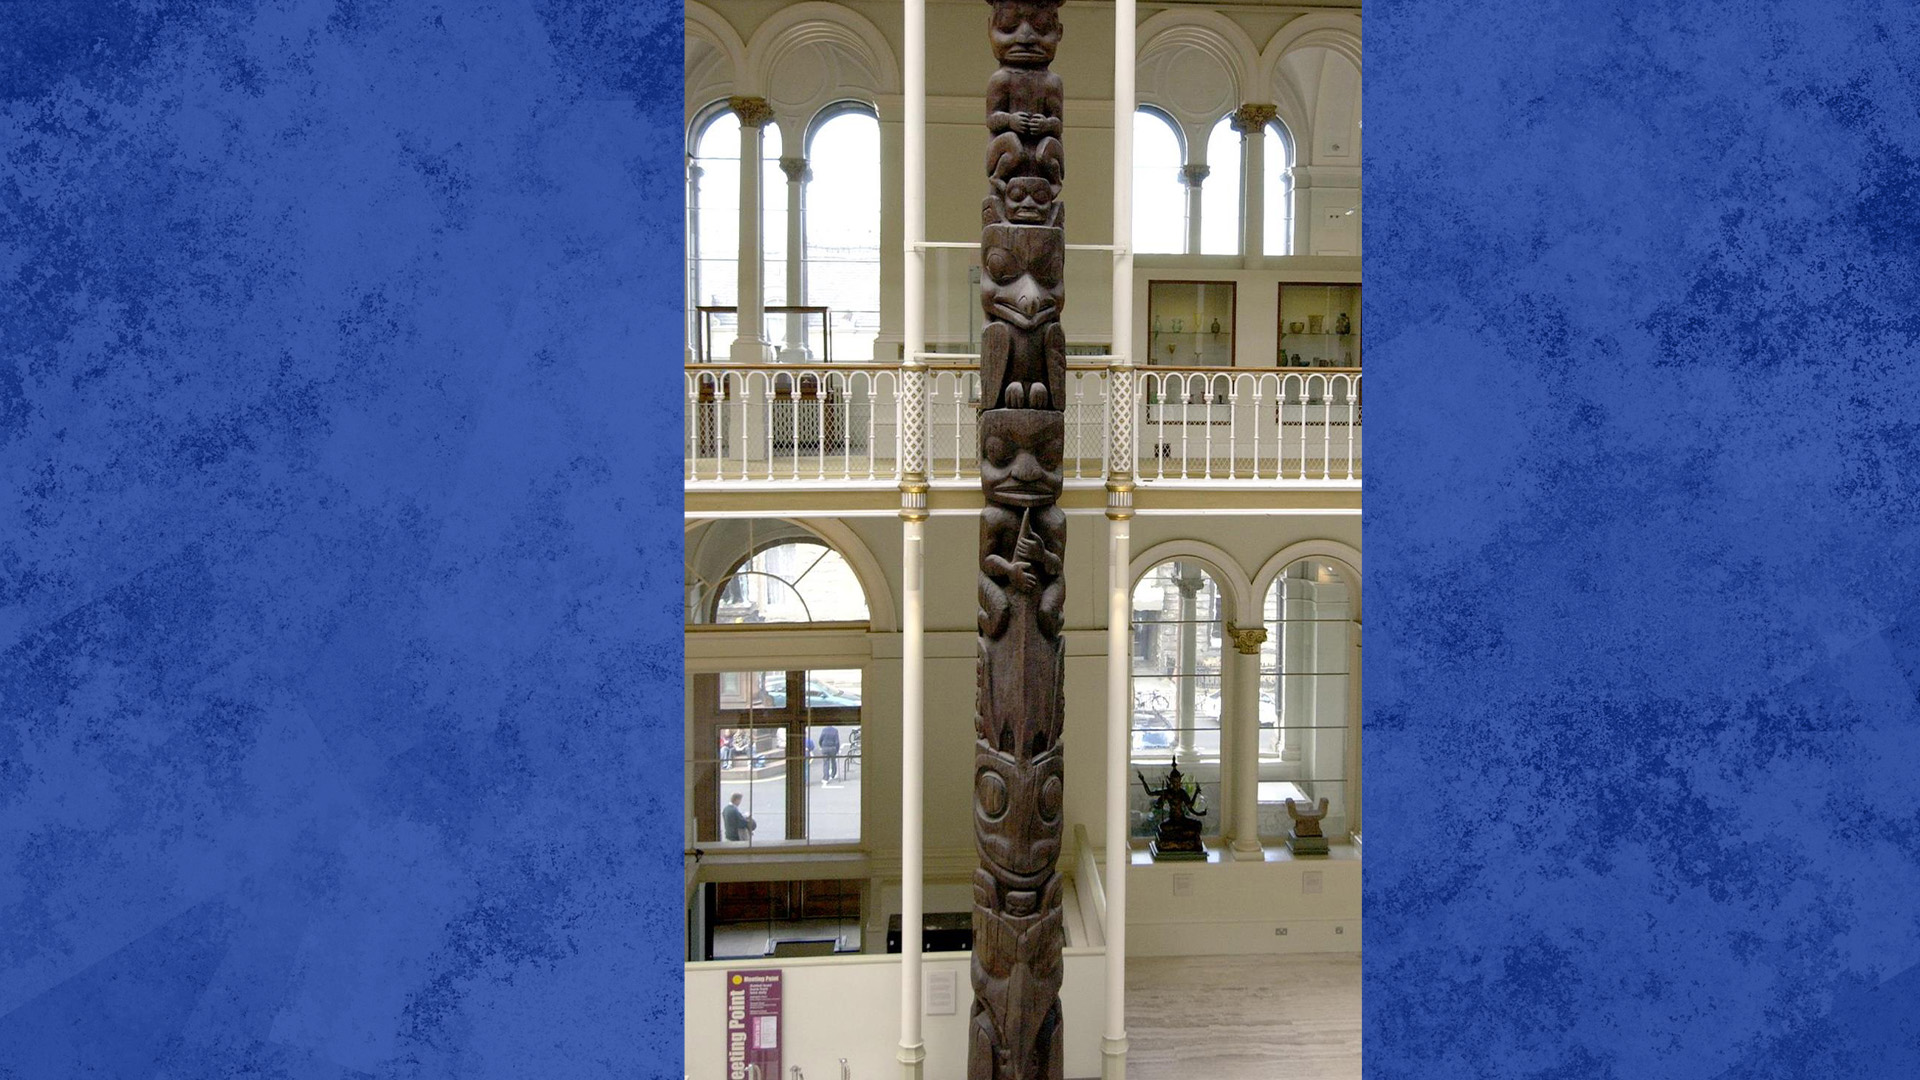 Le totem en cèdre rouge de 11 mètres a été pris sans autorisation en 1929 par un ethnographe enquêtant sur la vie dans le village Nisga'a, et vendu un an plus tard au musée en Écosse.